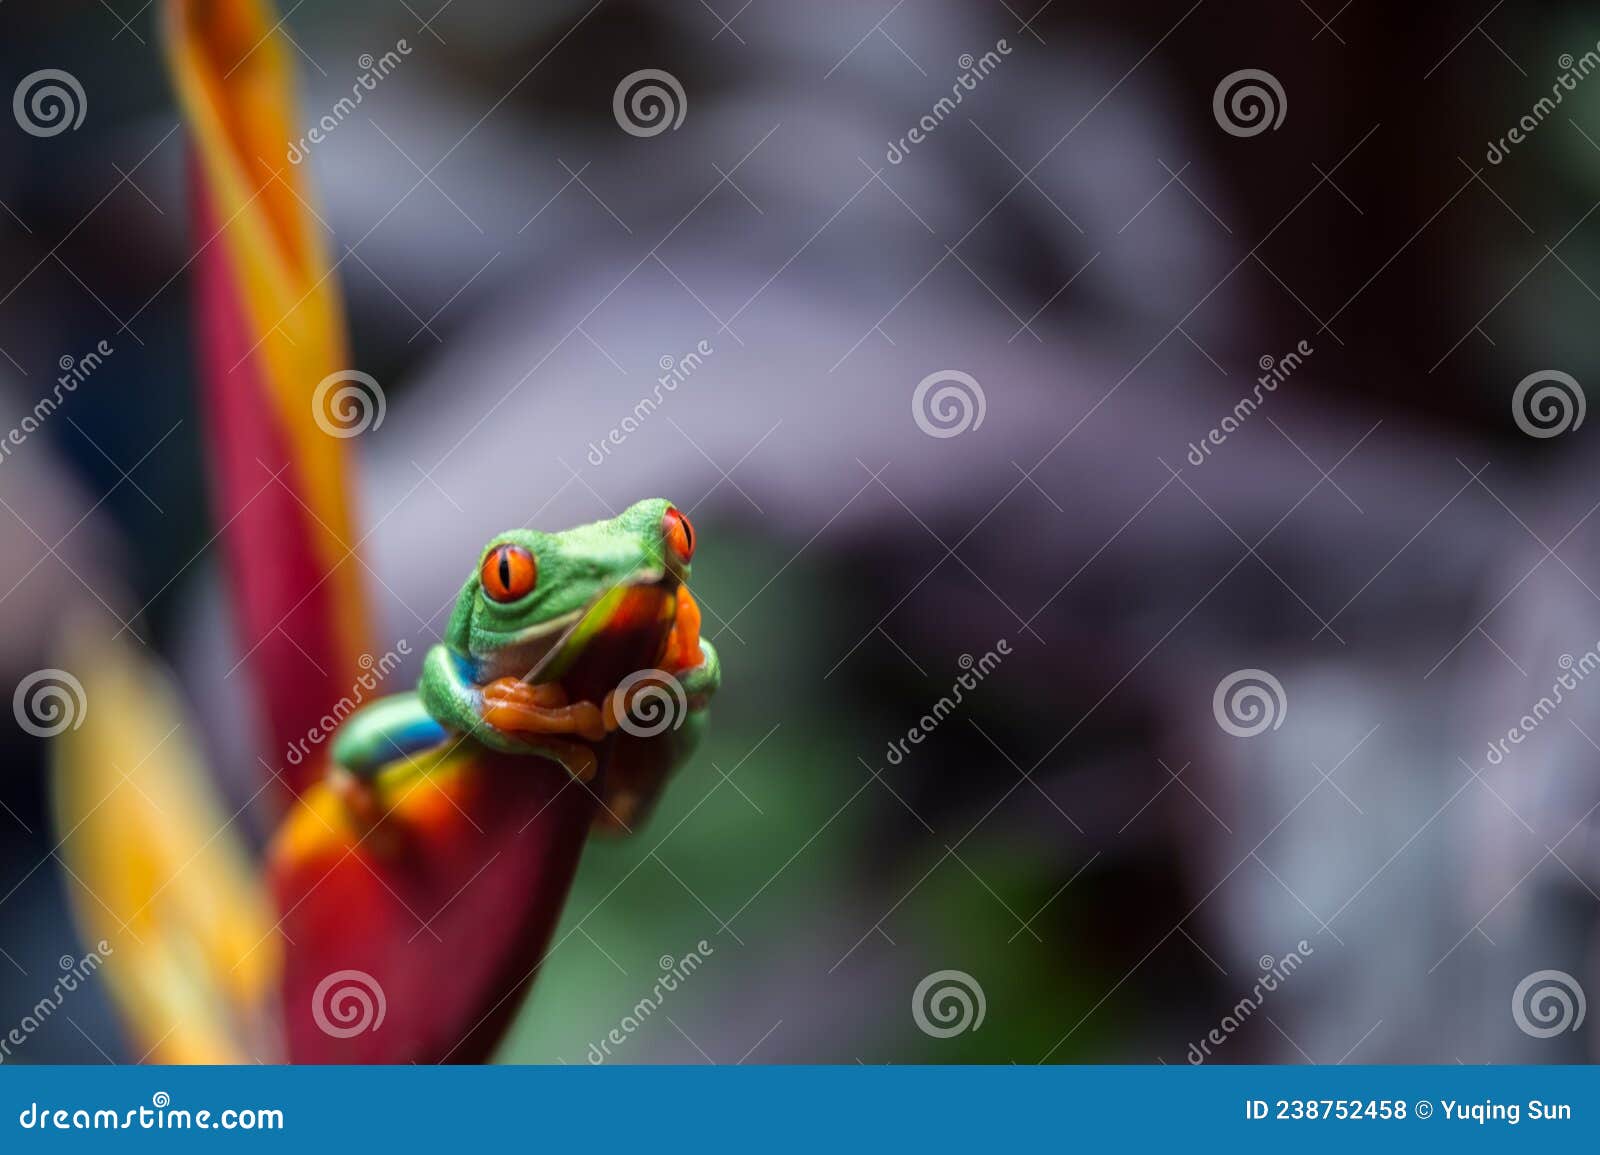 beautiful tree frog in costa rica